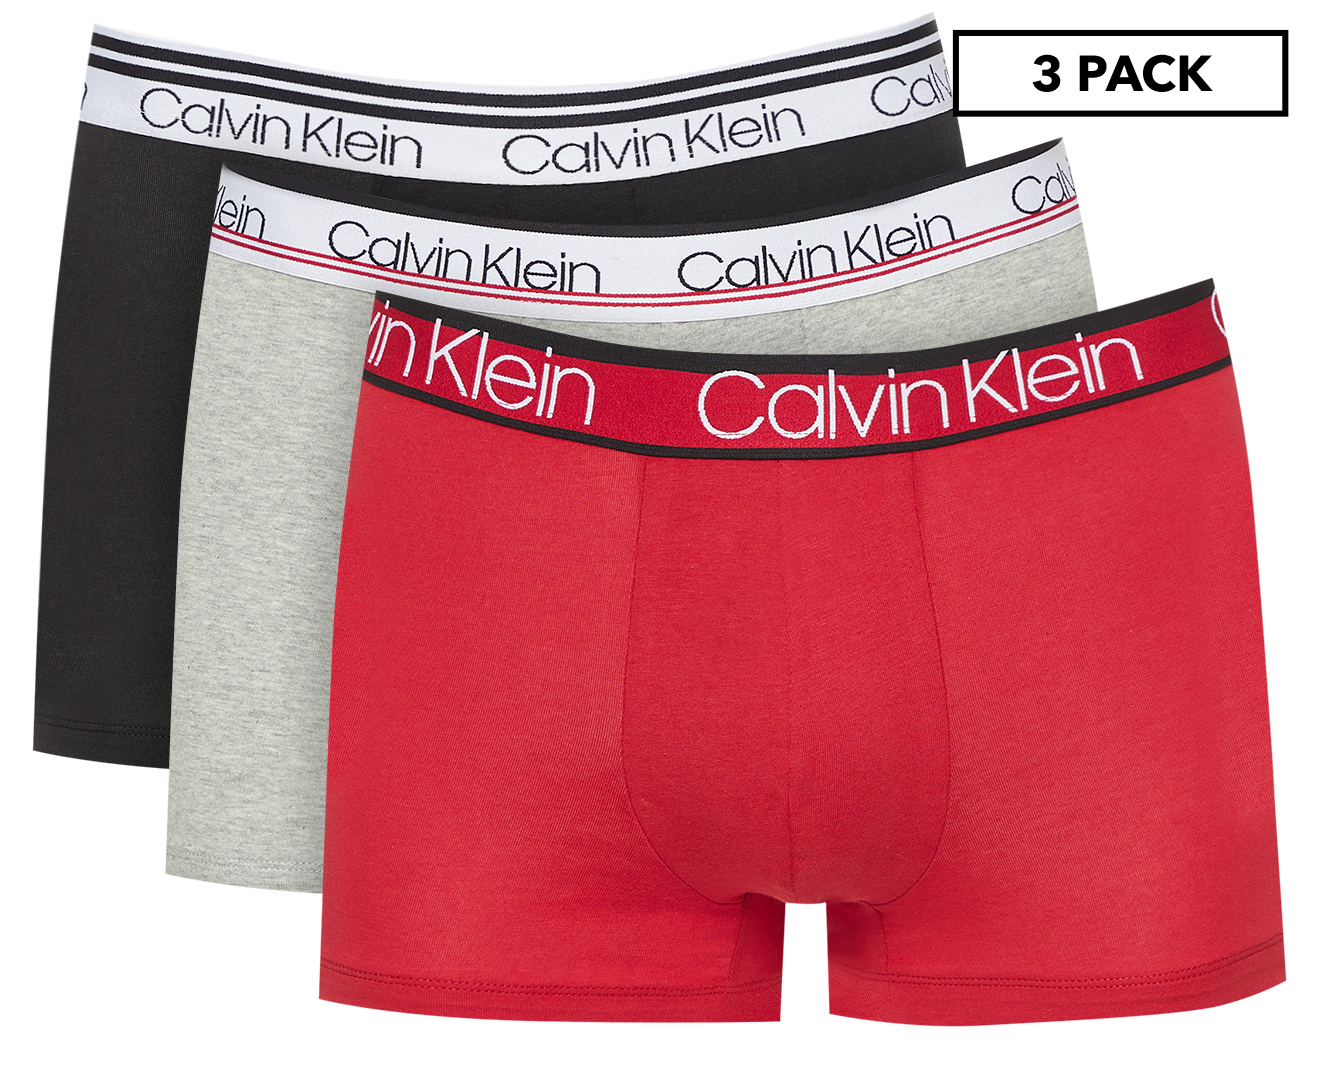 Calvin Klein Men's Cotton Stretch Trunk 3-Pack - Black/Grey Heather/Red ...